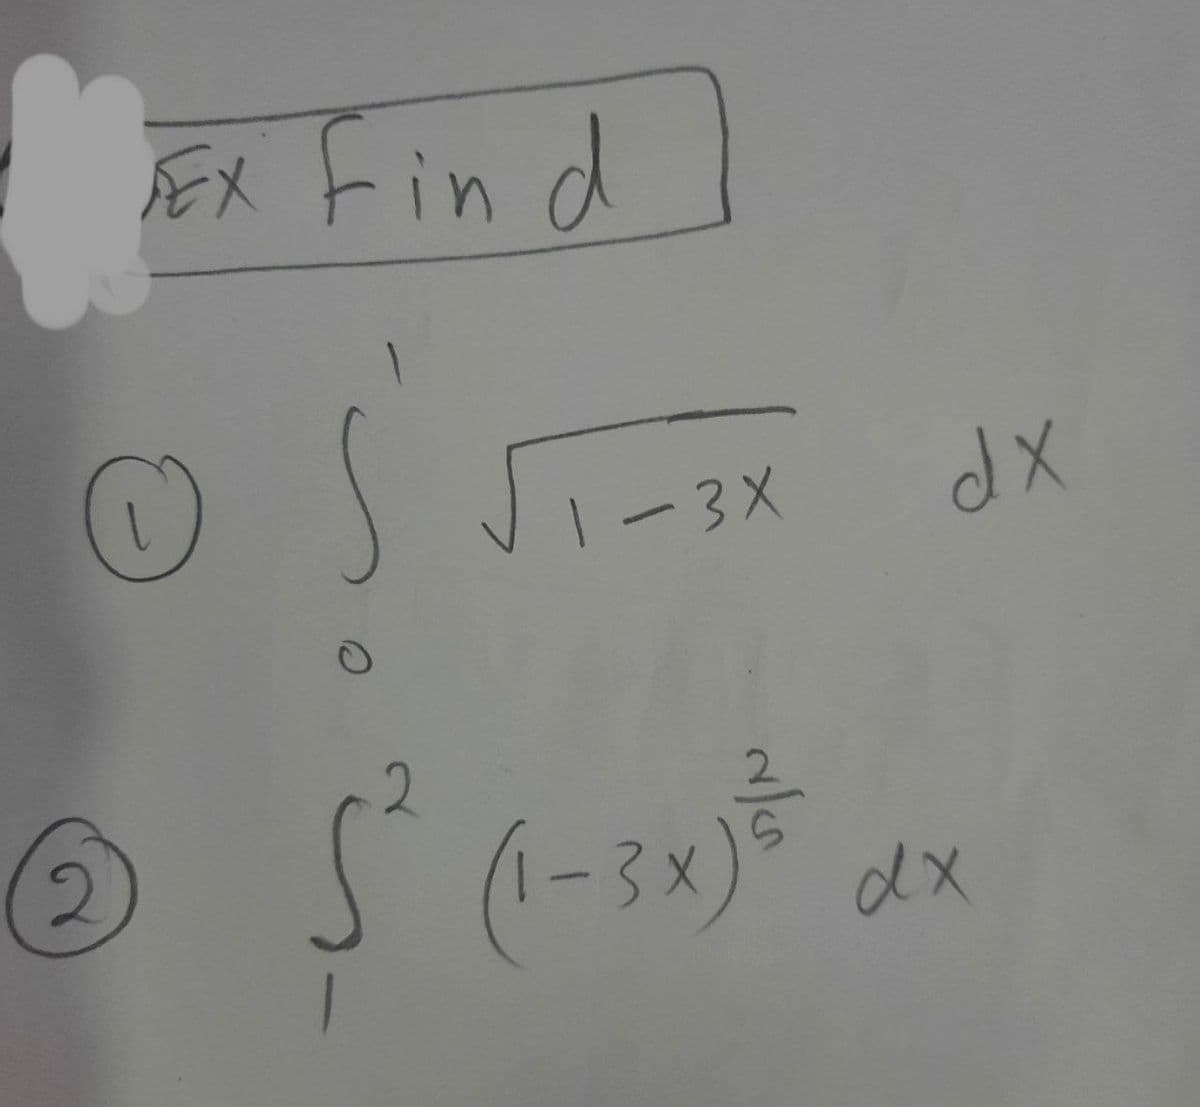 FEX Fin d
1-3X
(1-3x) dx
2
